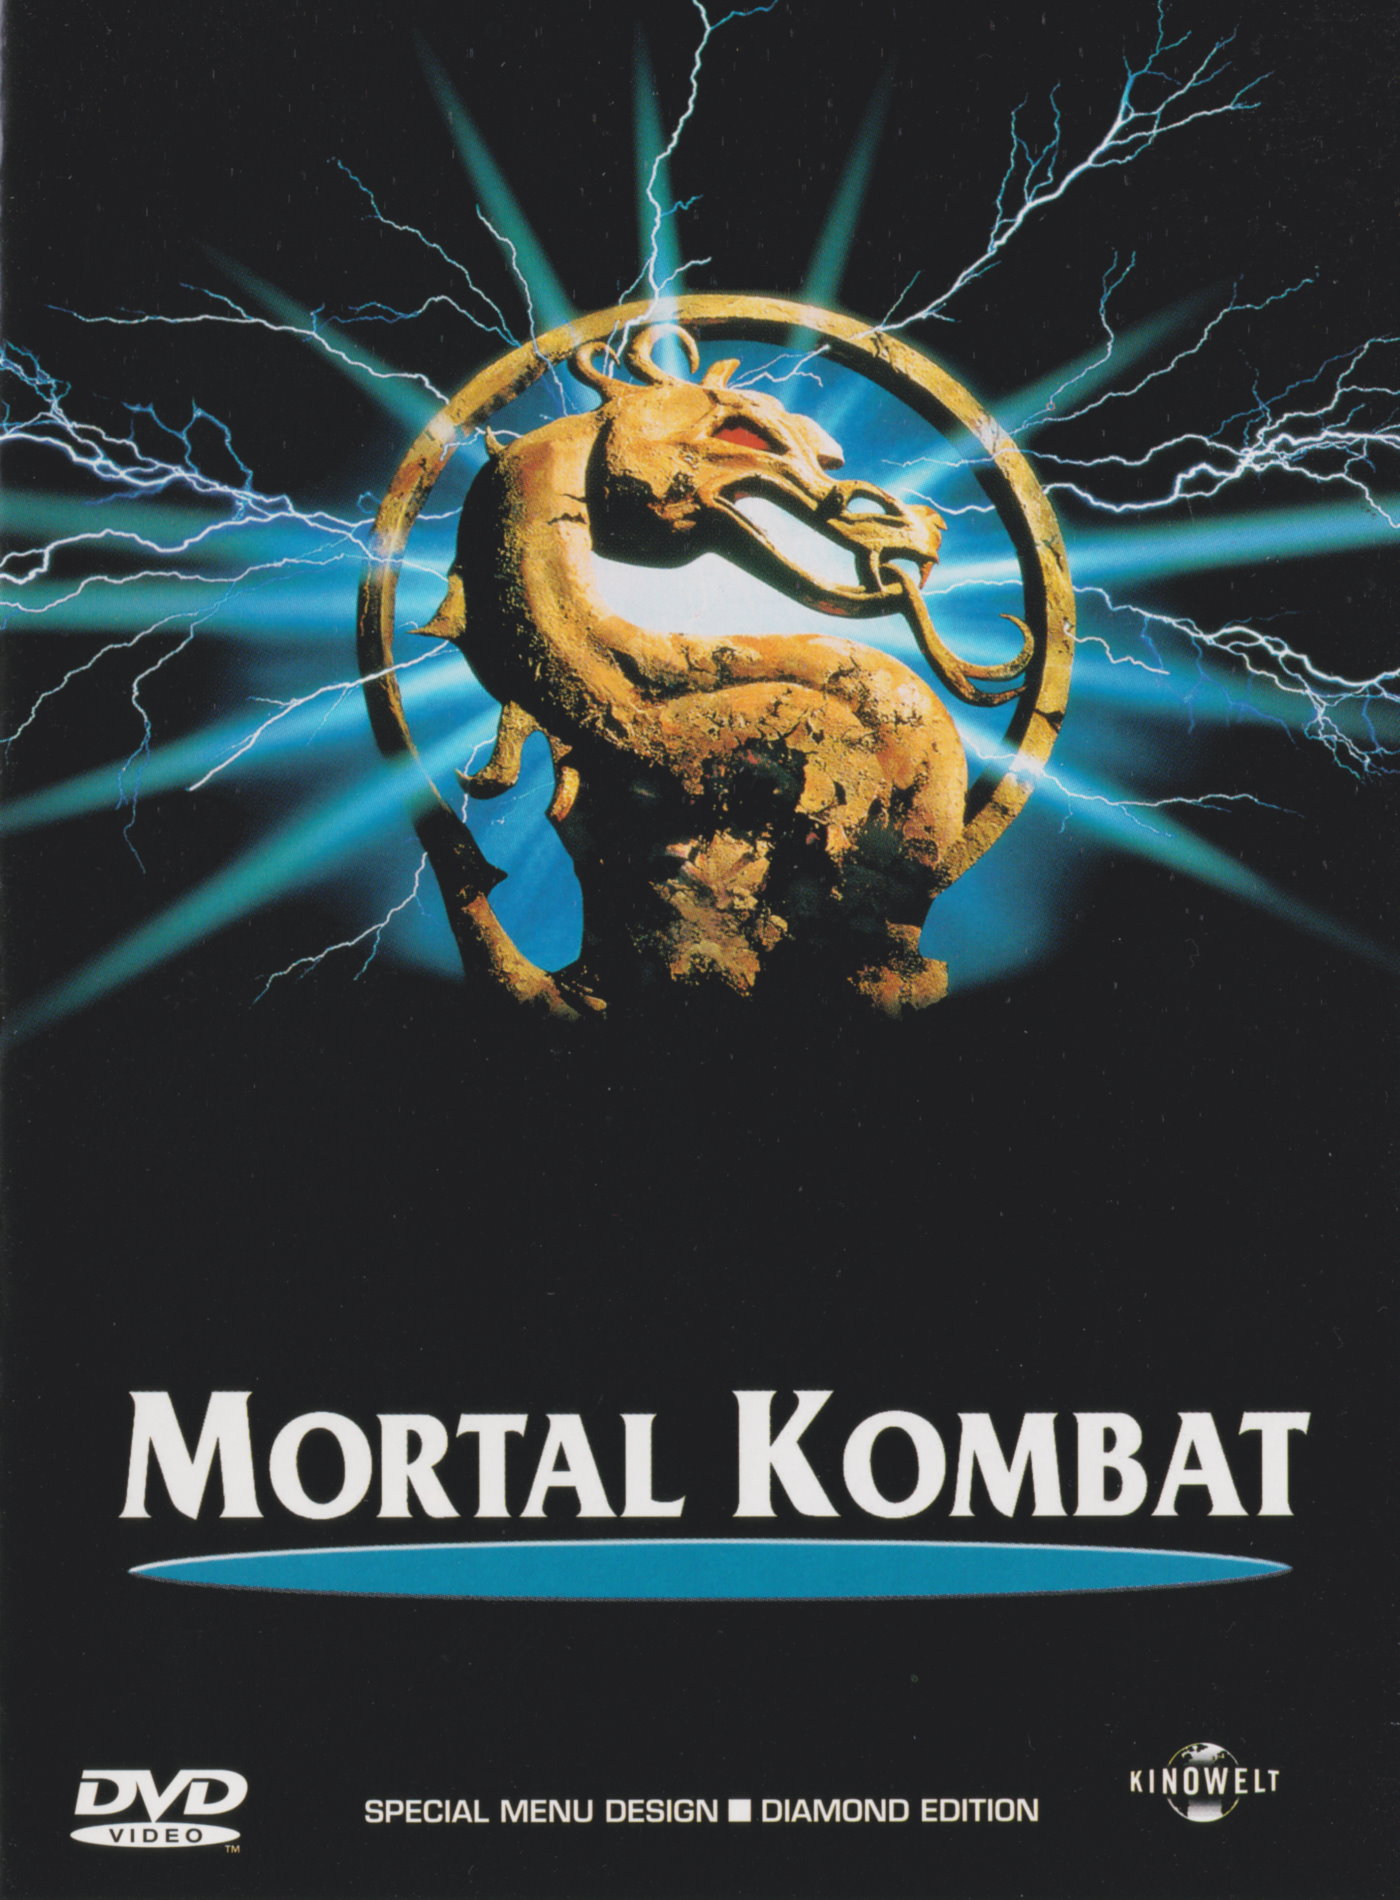 Cover - Mortal Kombat.jpg